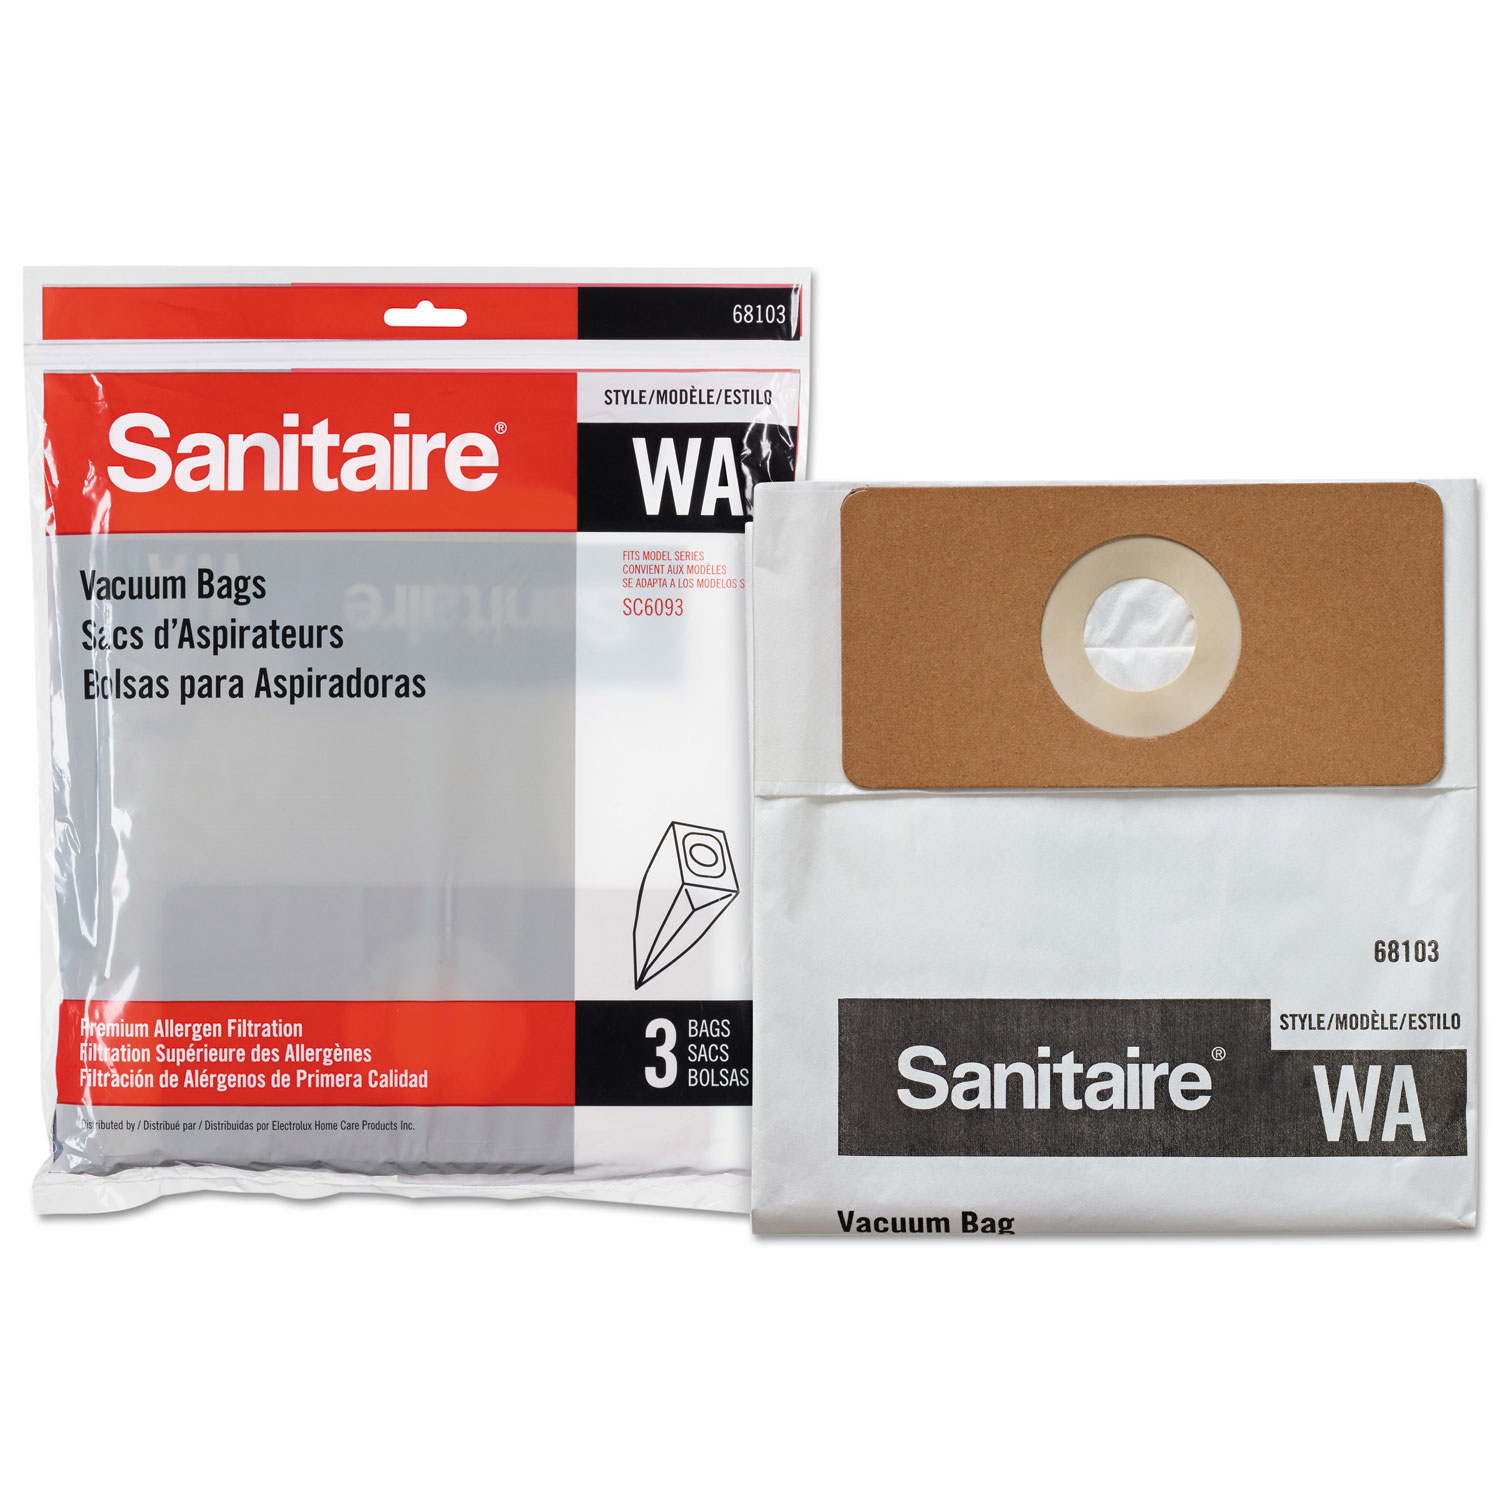  Sanitaire EUR6810310 WA Premium Allergen Vacuum Bags for SC5745/SC5815/SC5845/SC5713, 3/PK, 10PK/CT (EUR6810310) 